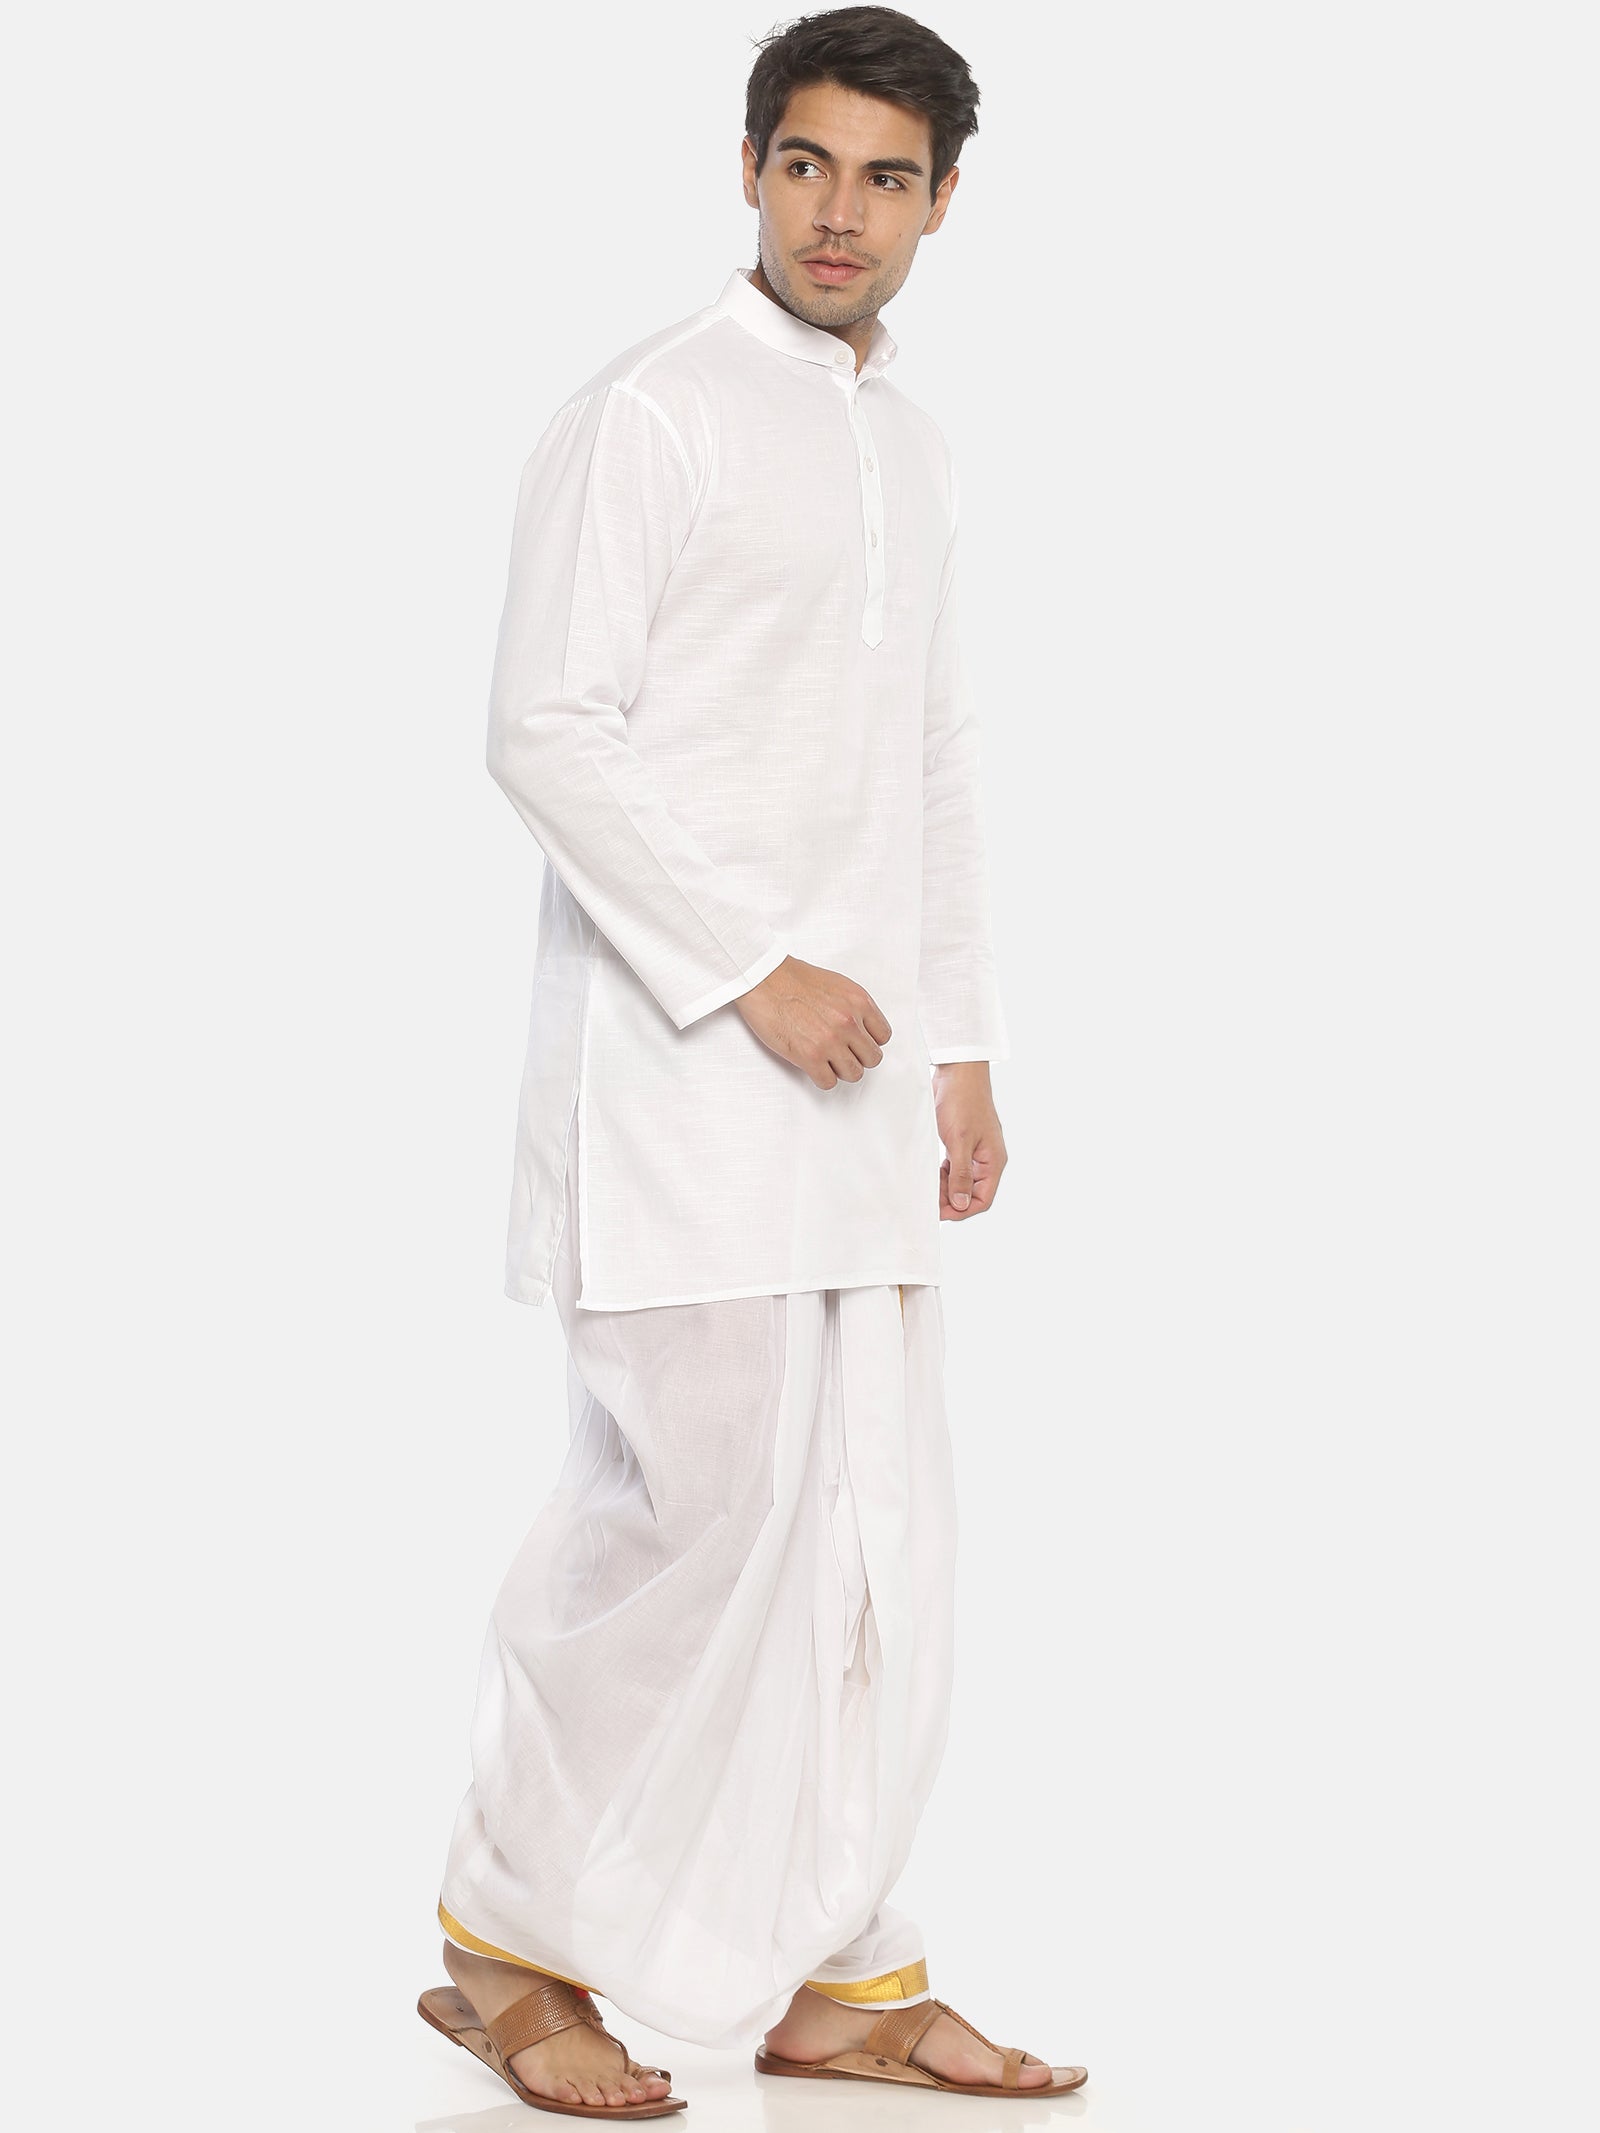 Traditional Dress of Maharashtra